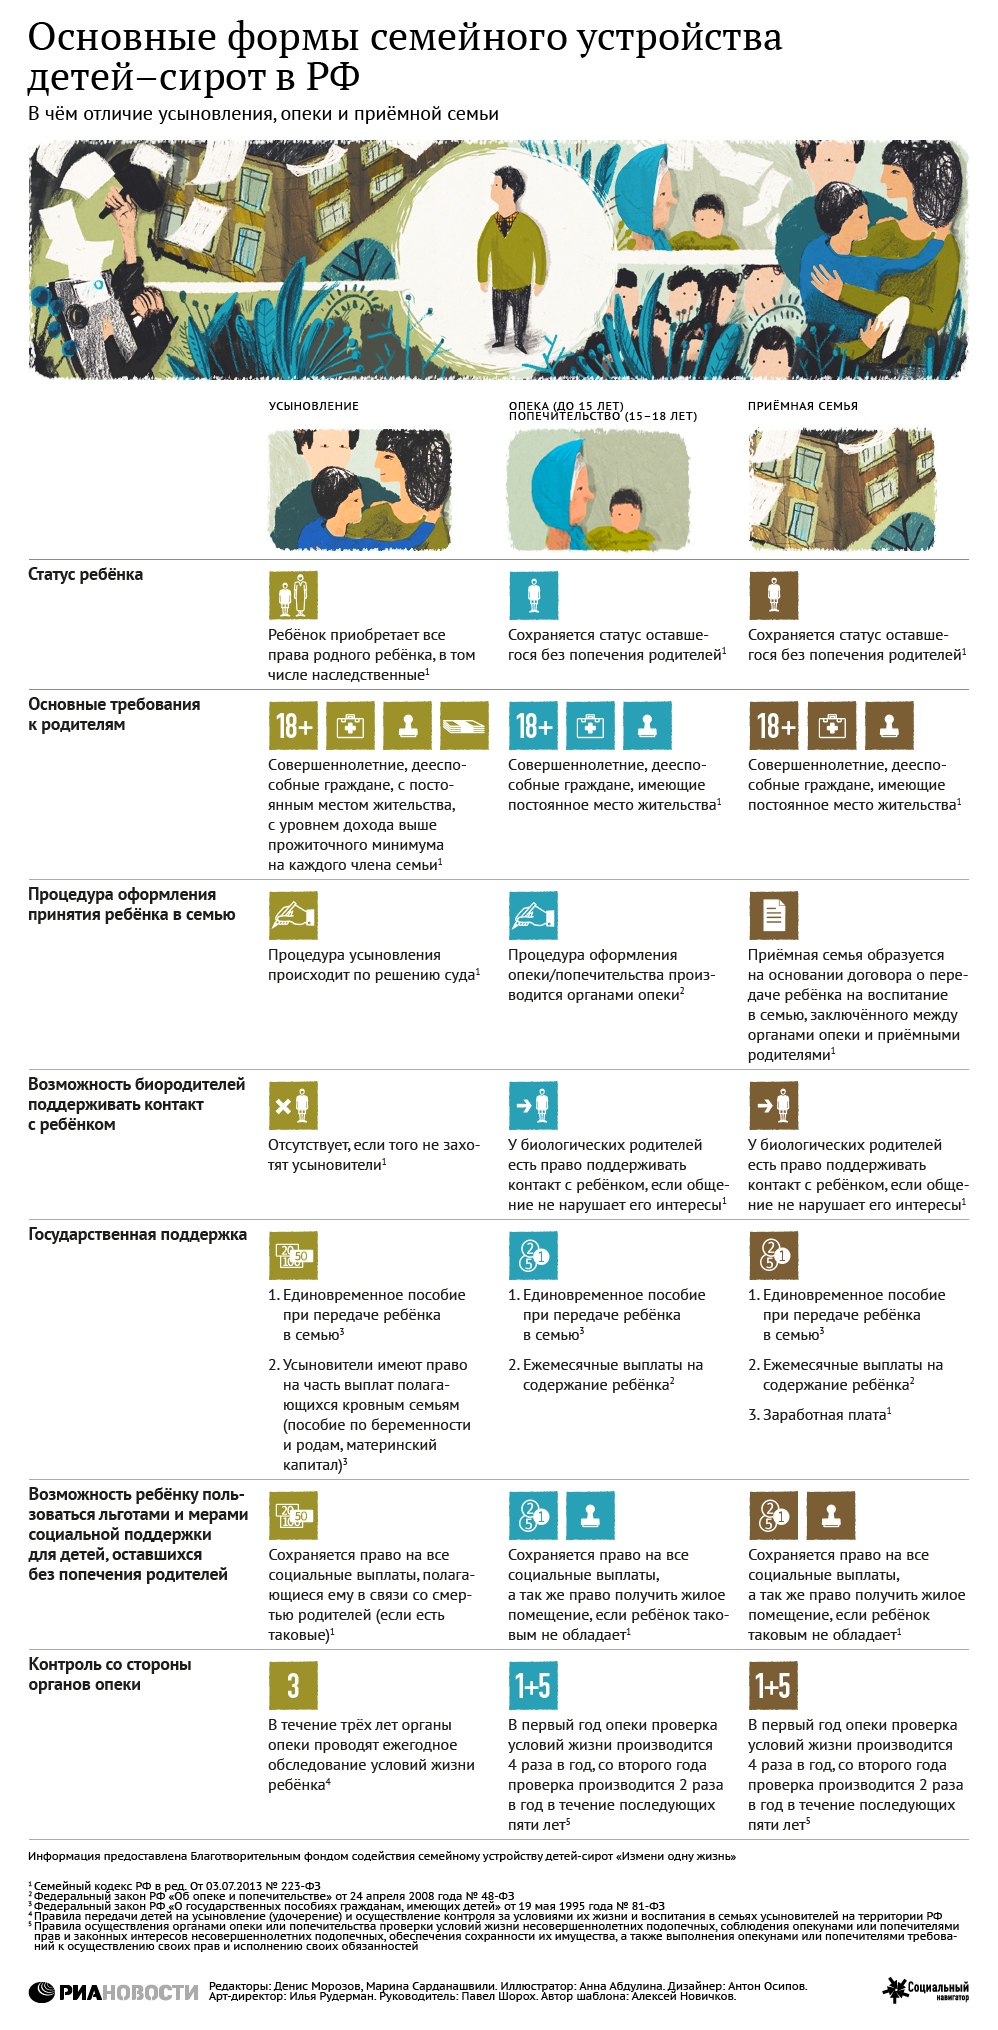 Основные формы семейного устройства детей-сирот в РФ